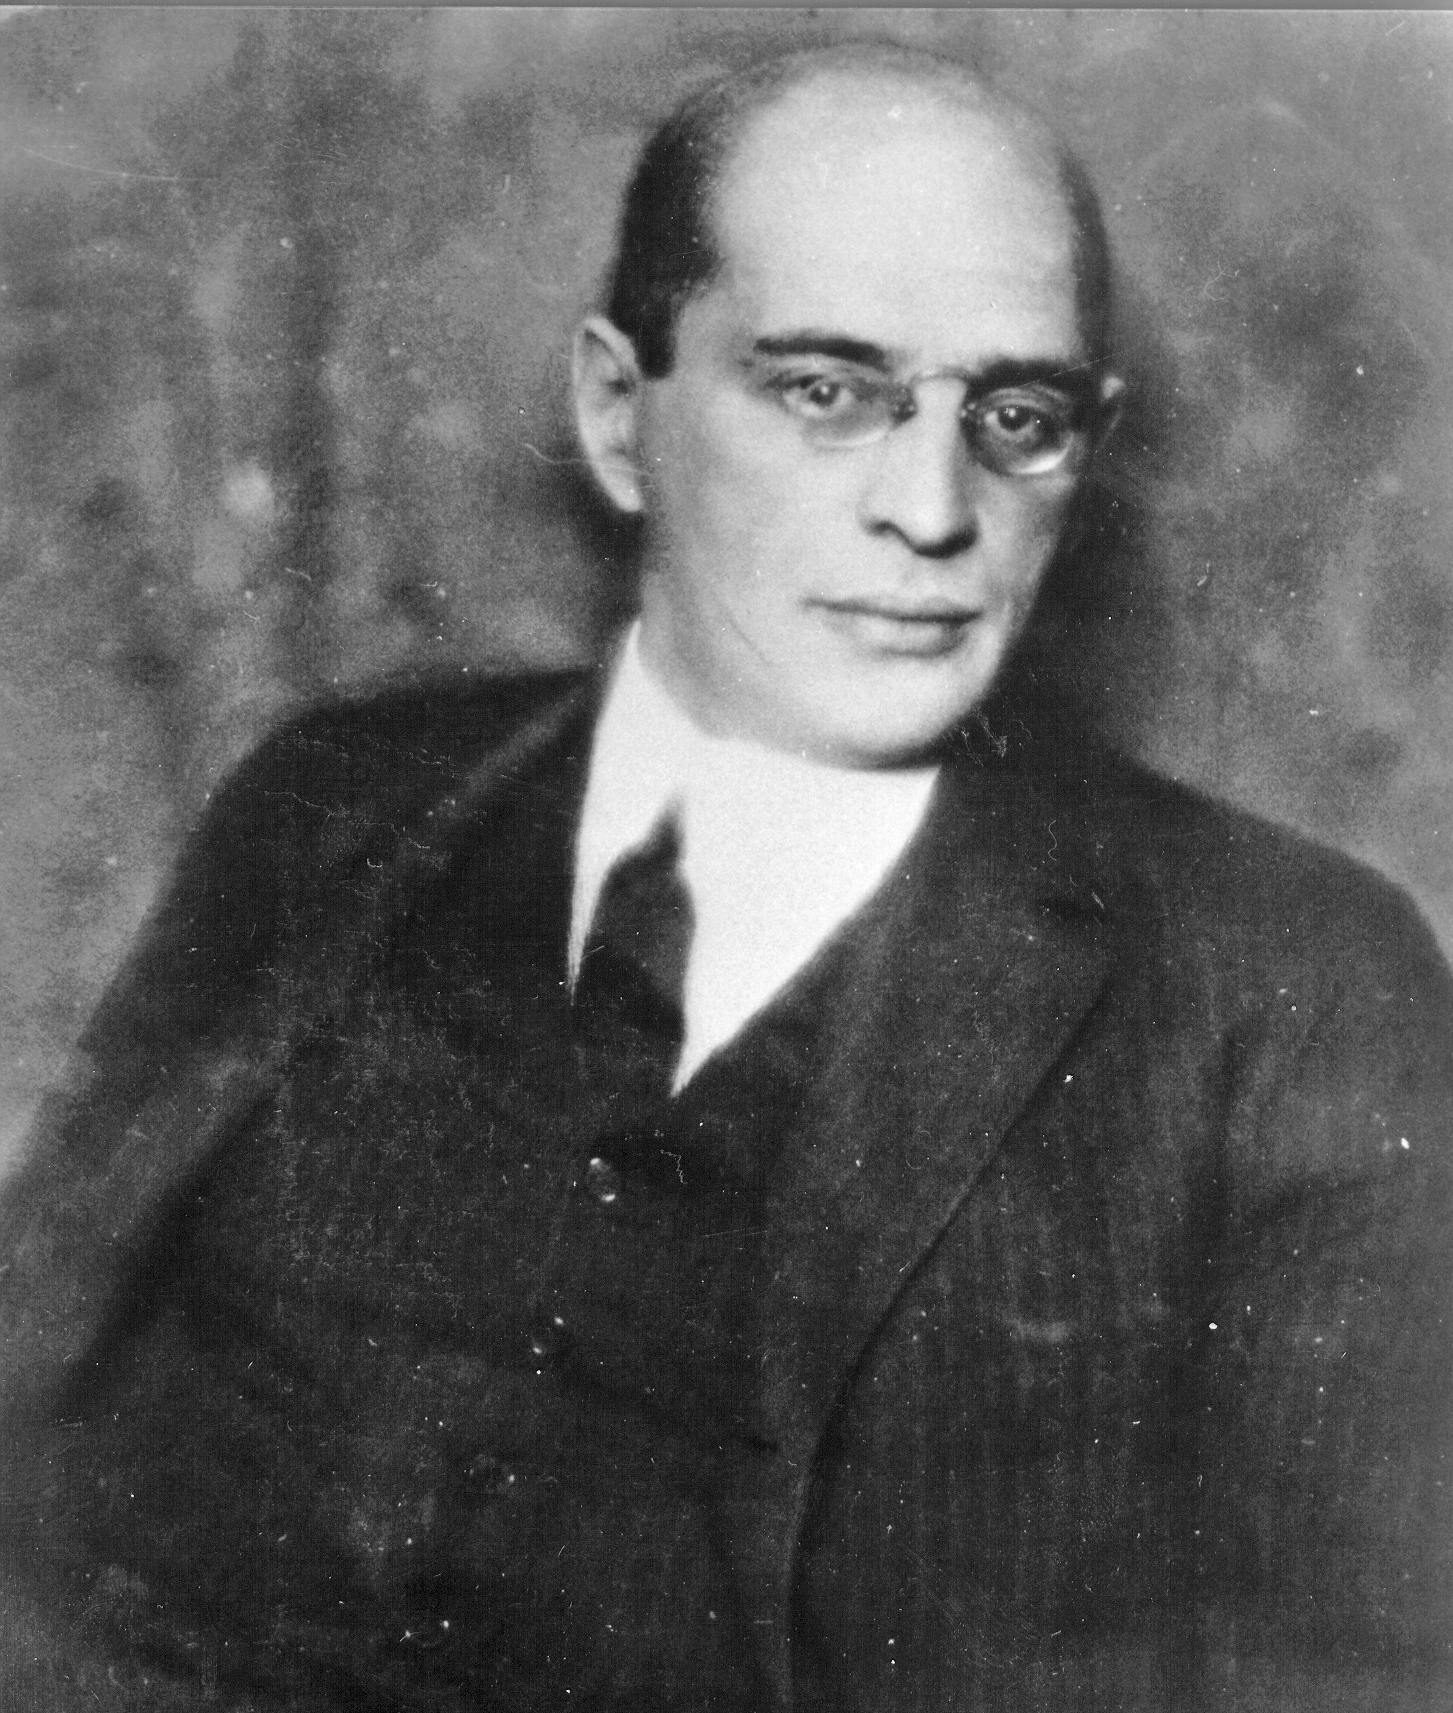 Leo Perutz (1882 - 1957)